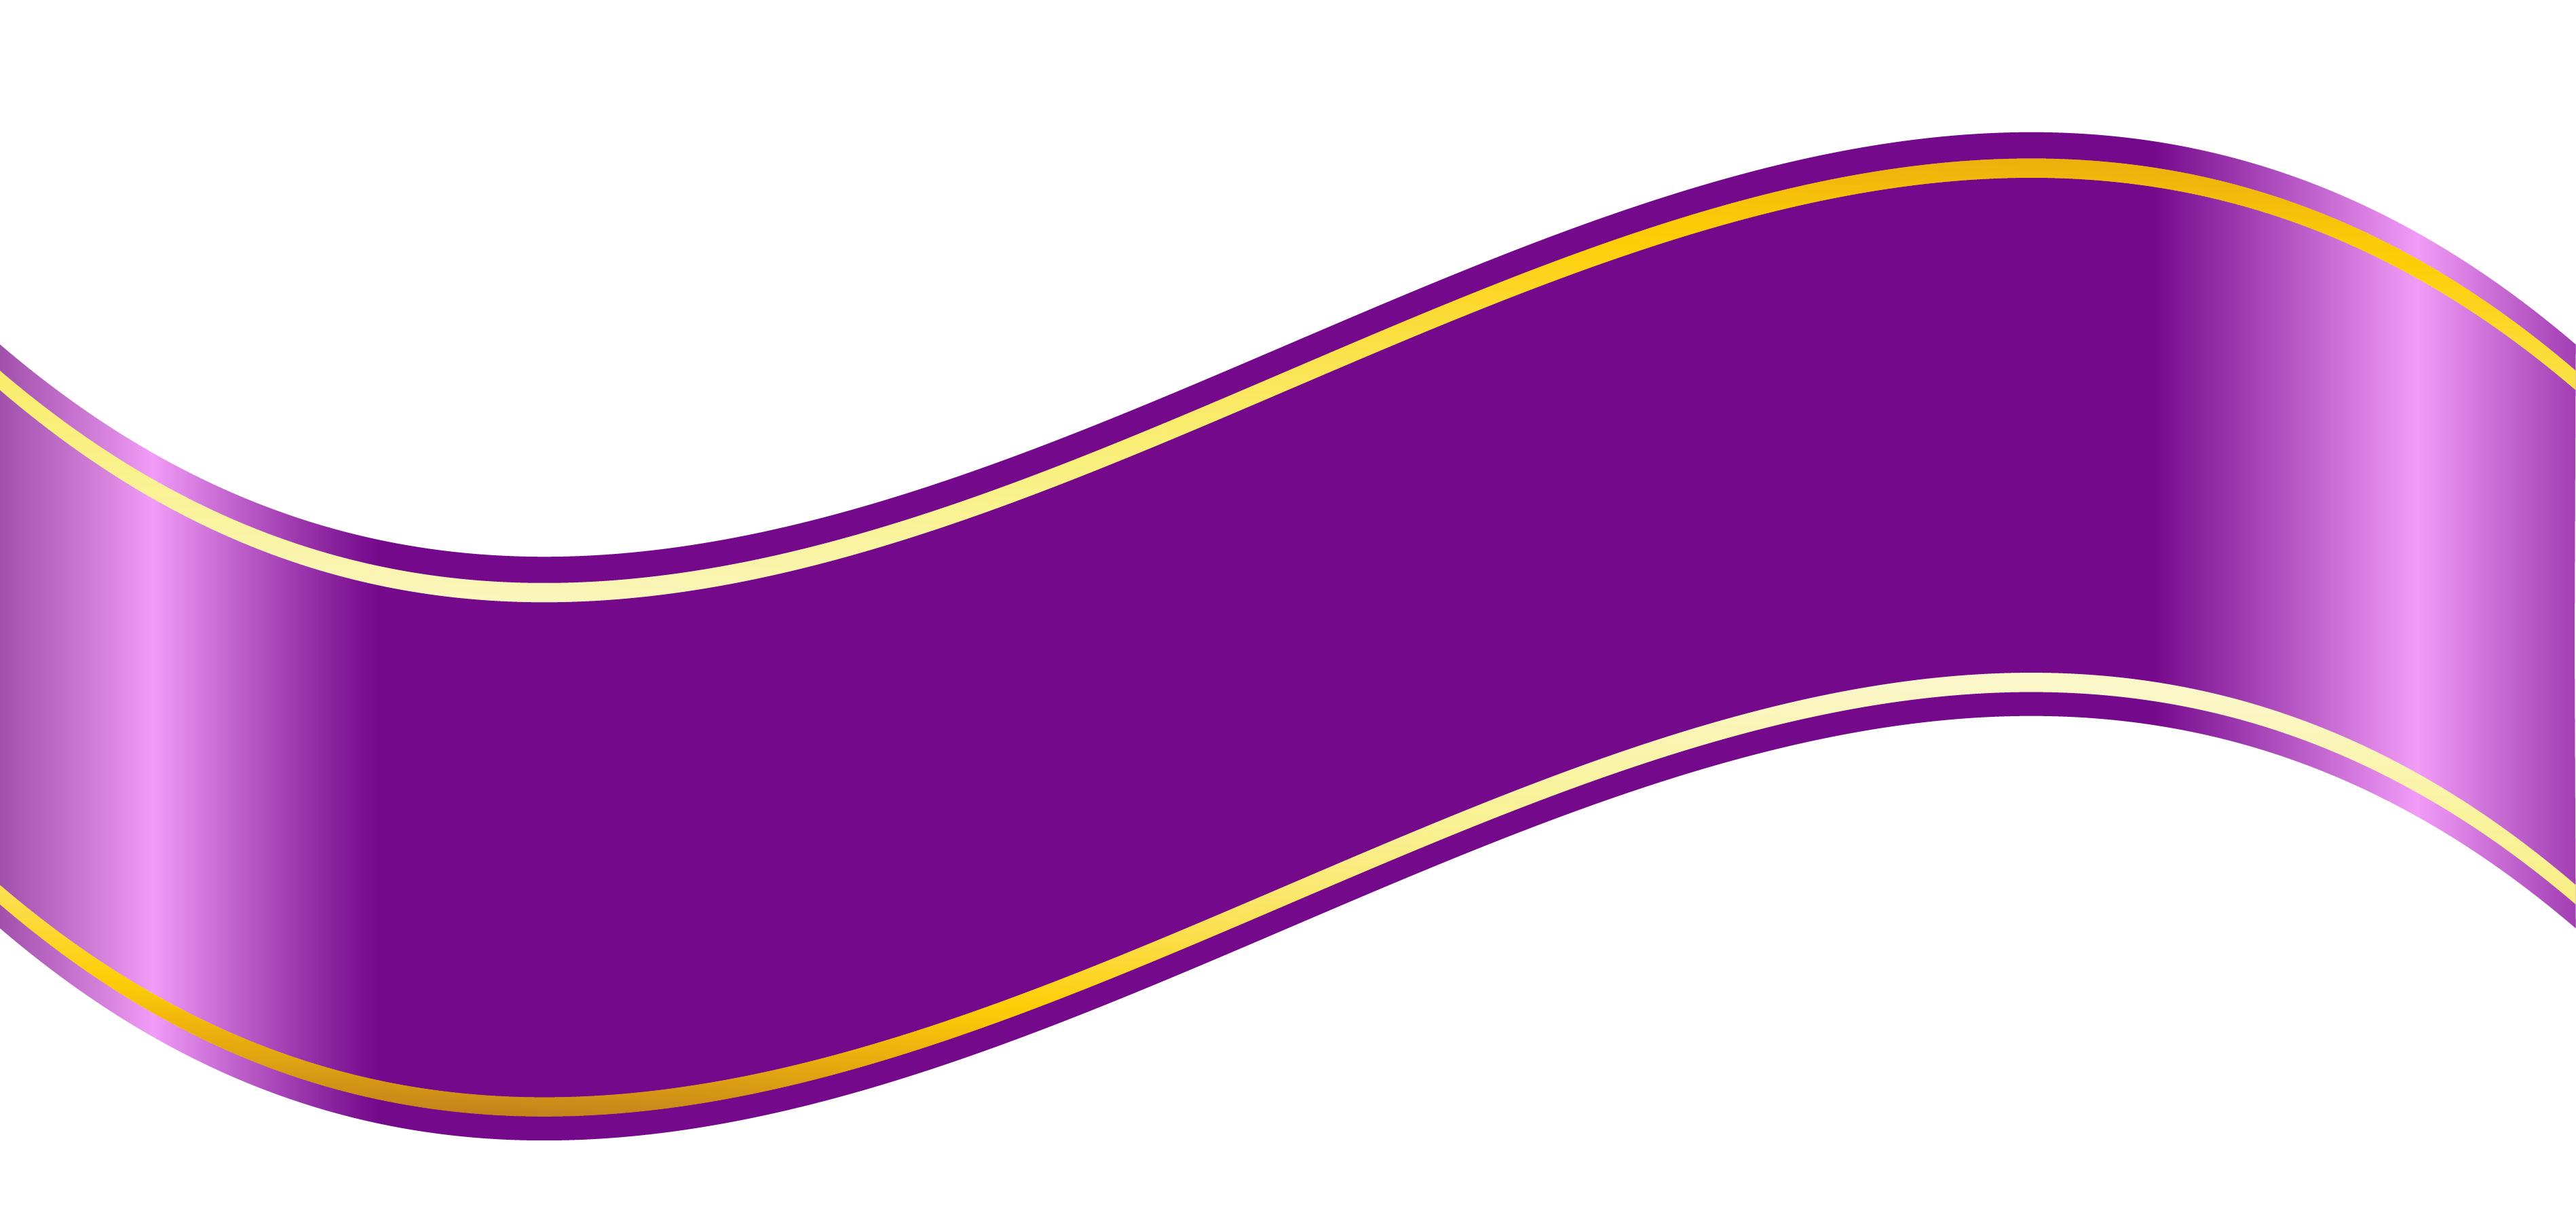 Фиолетовый баннер бесплатно PNG Image